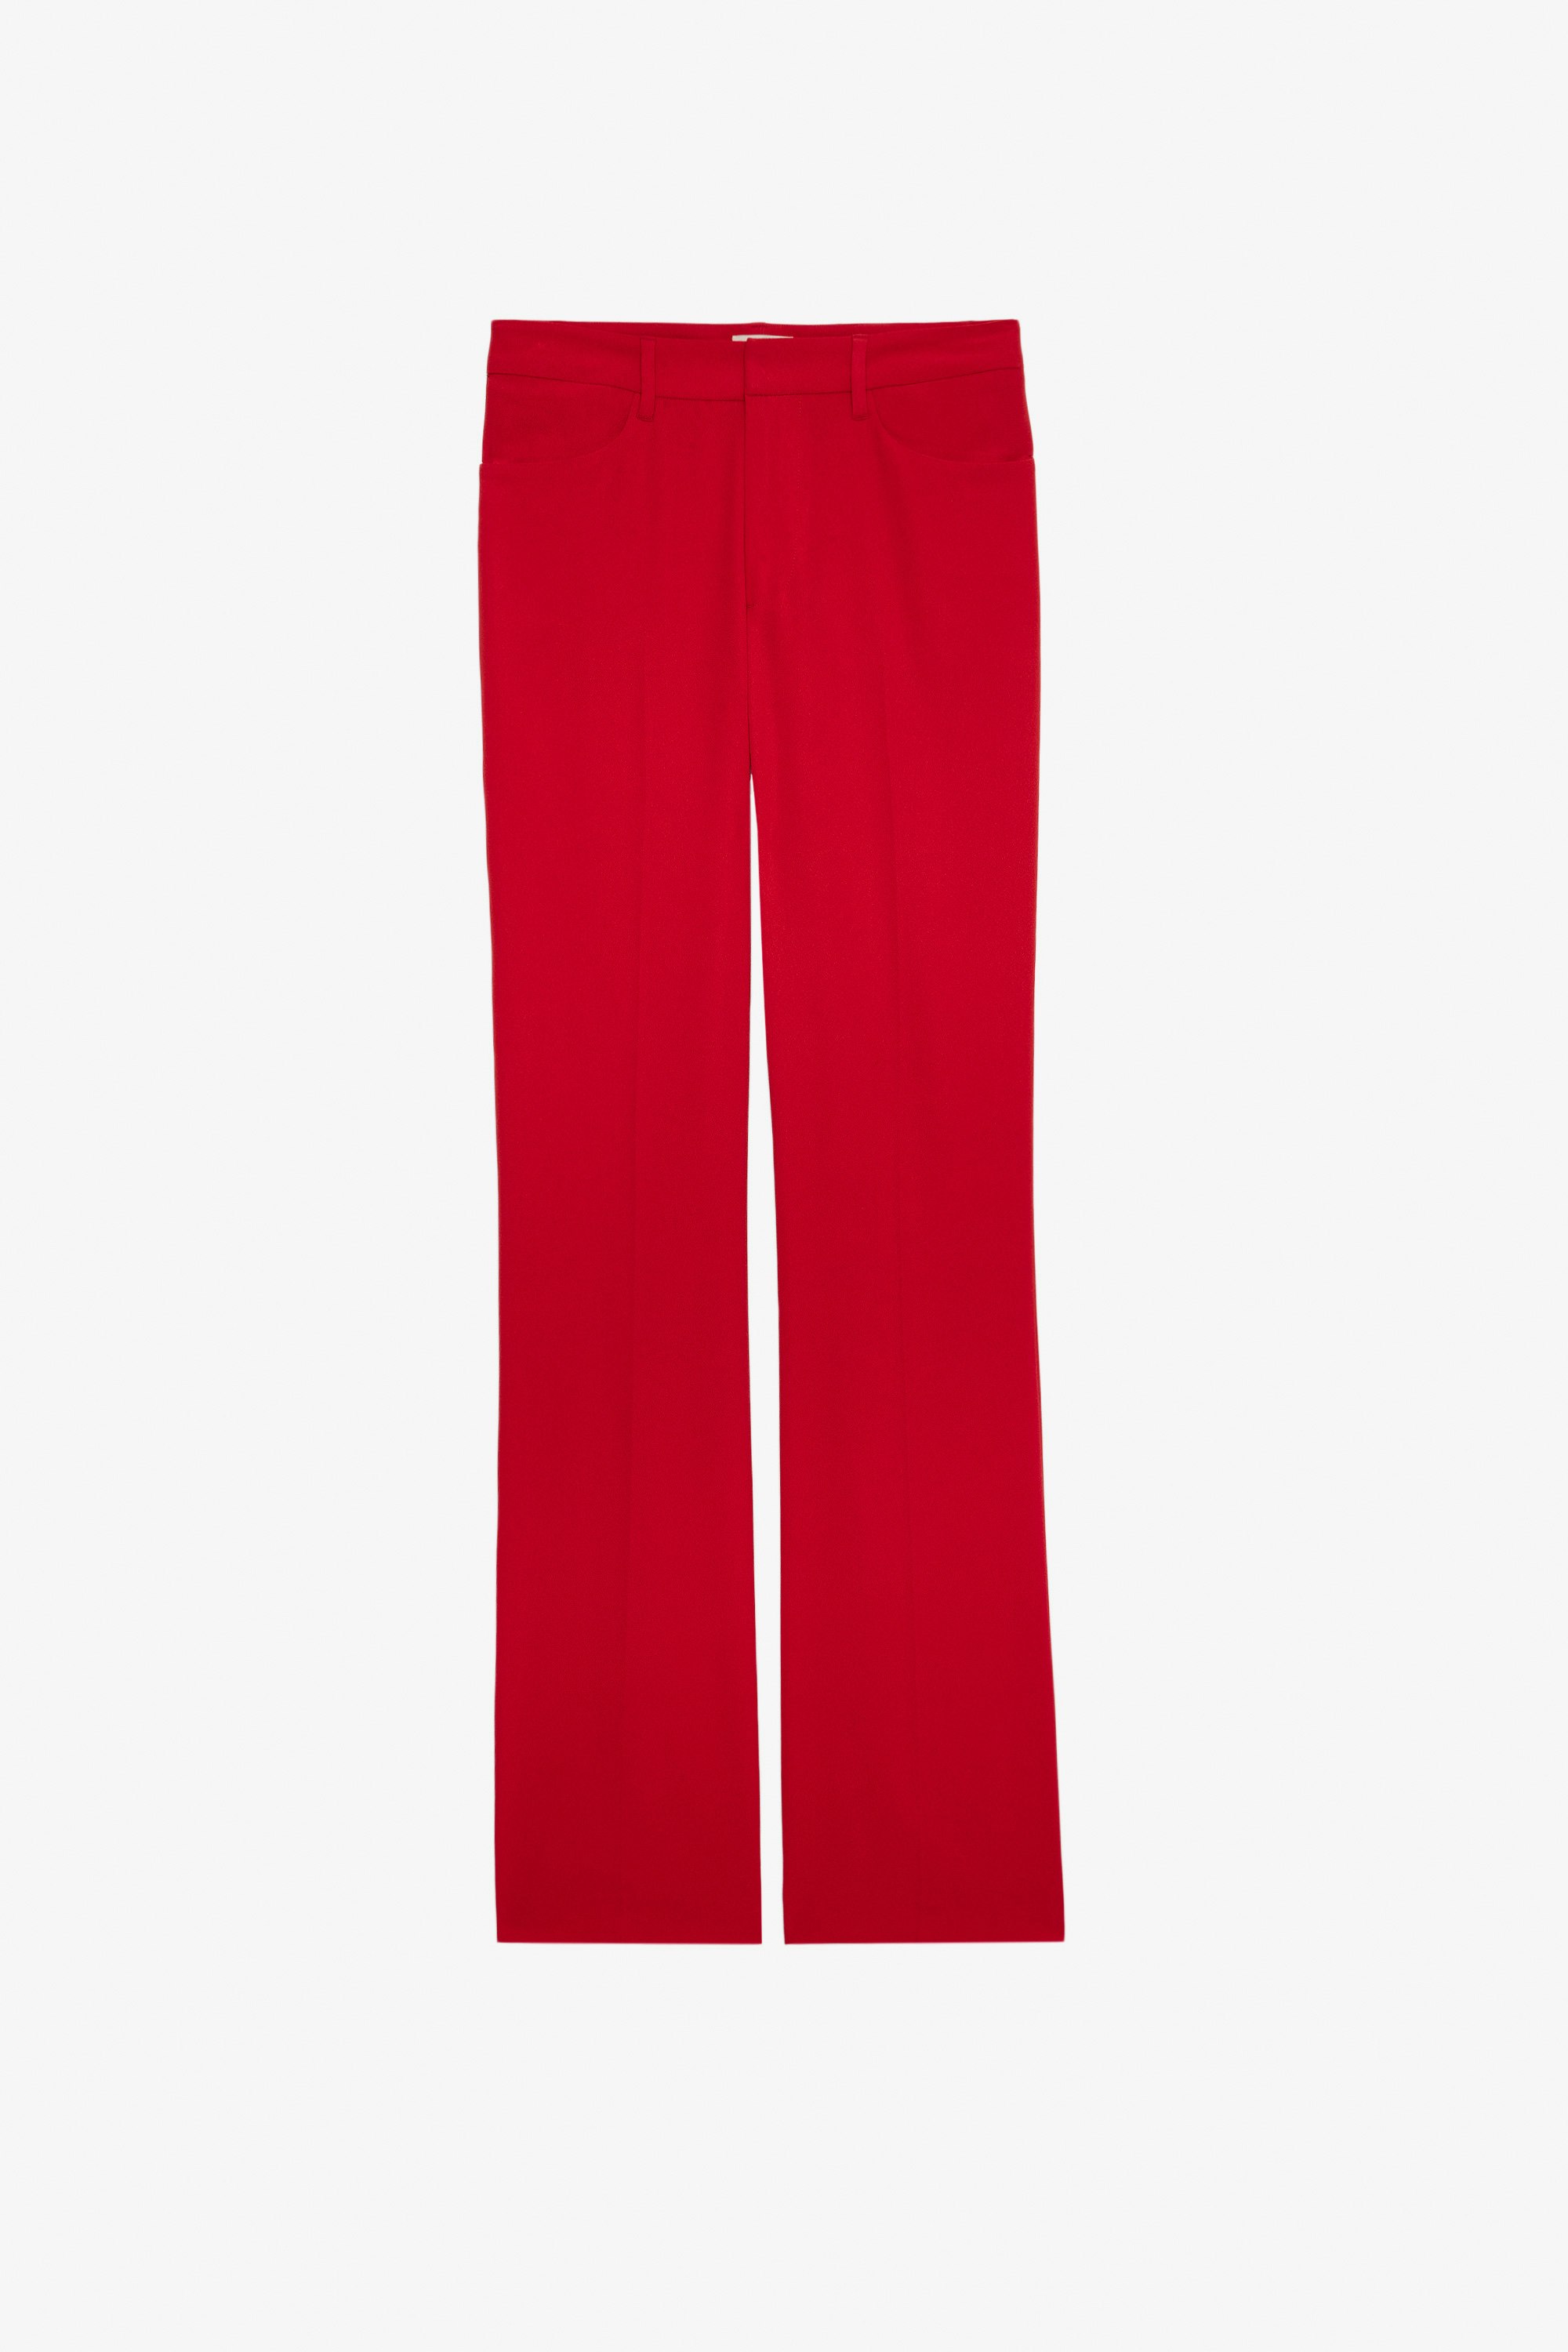 Pantalon Pistol Pantalon de tailleur en crêpe rouge femme.